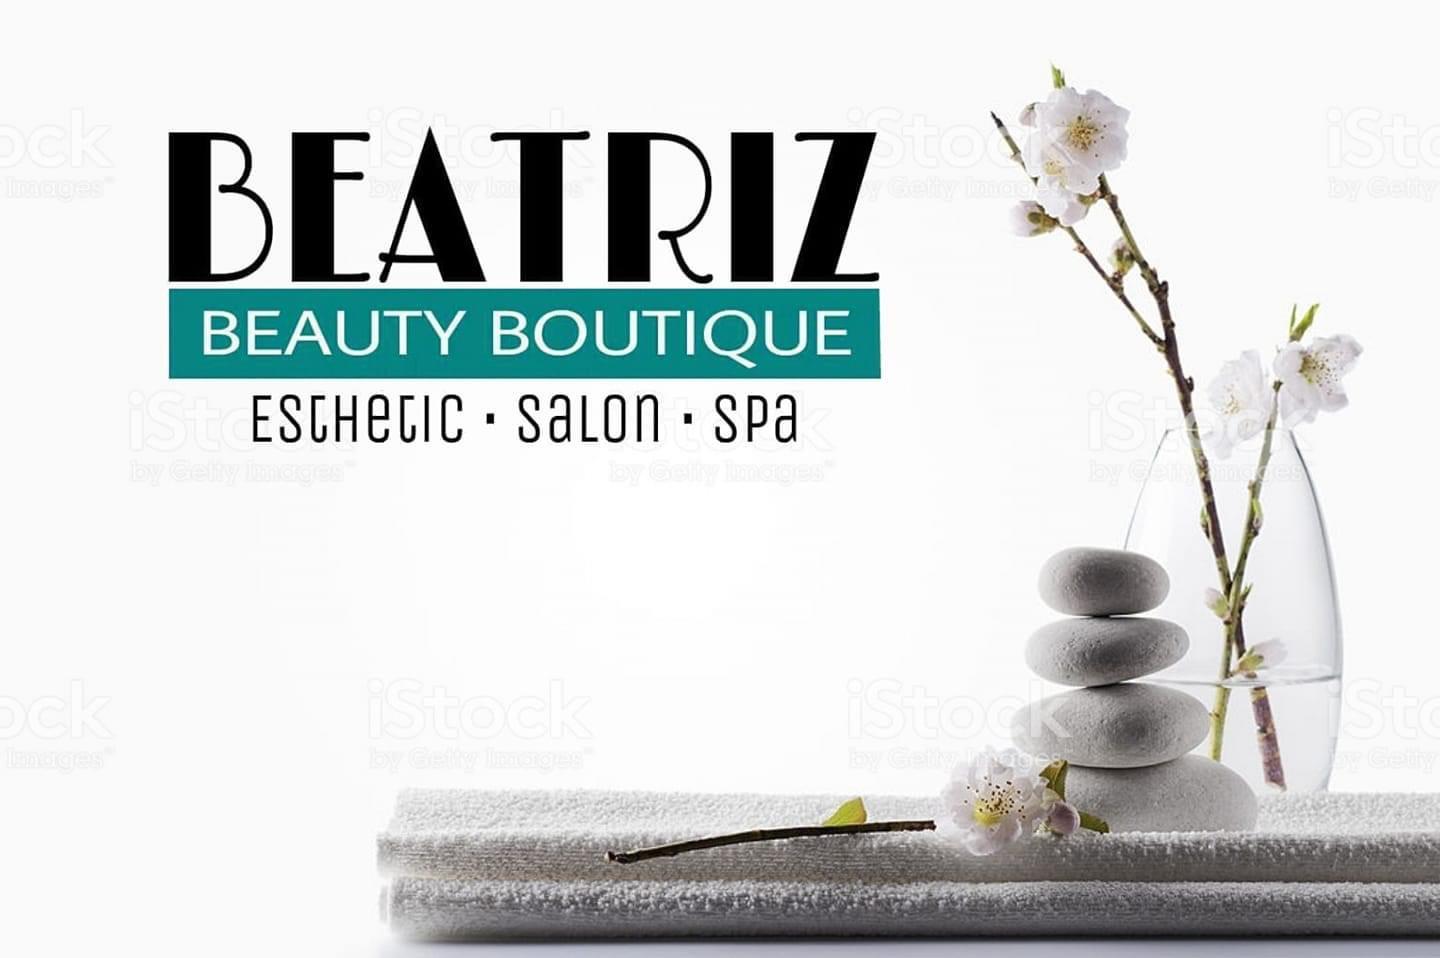 BEATRIZ BEAUTY BOUTIQUE - Esthetic Salon Spa -